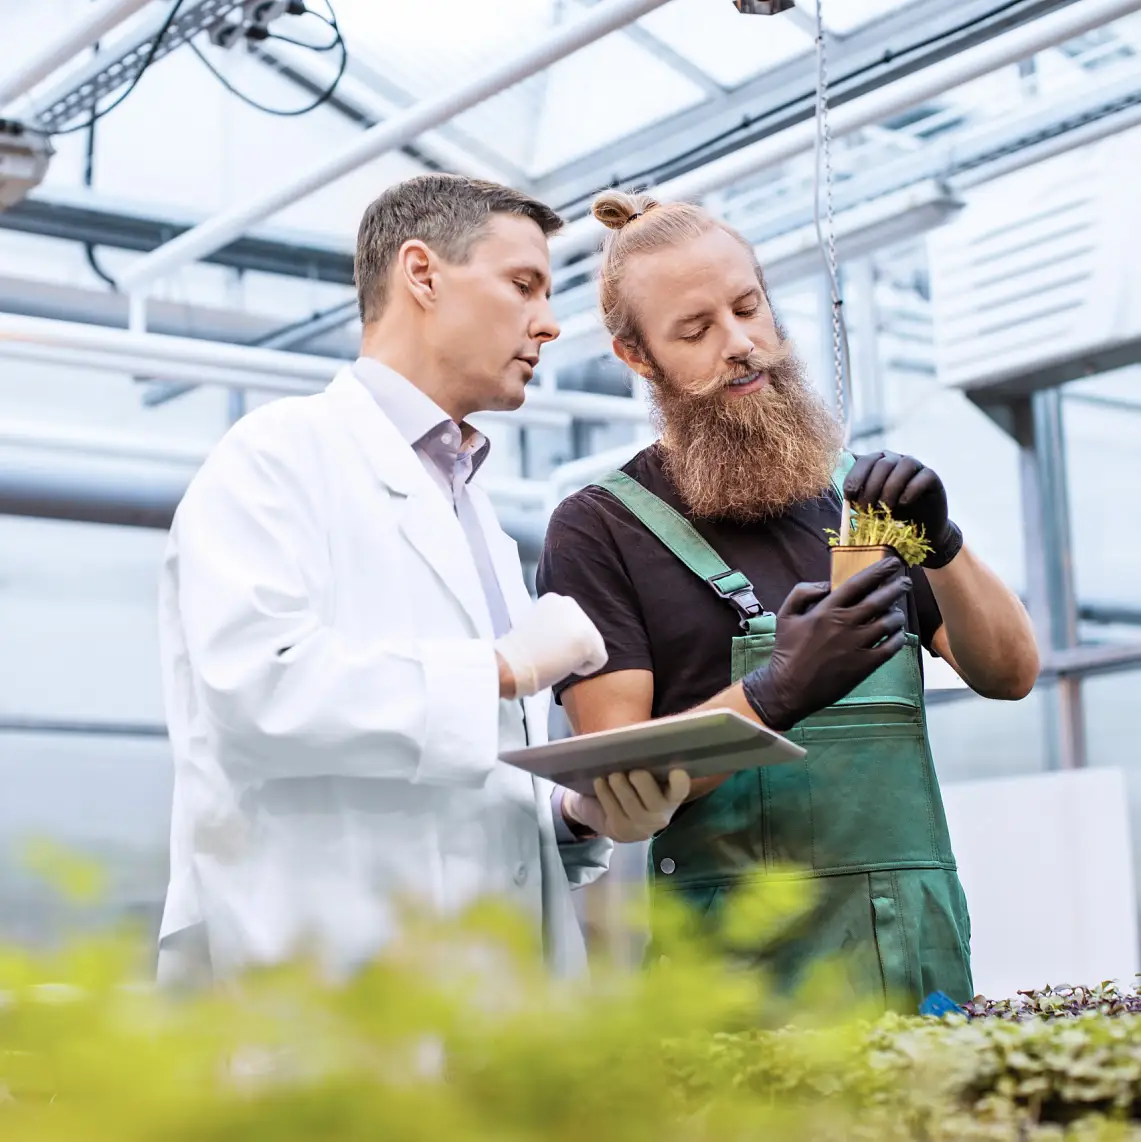 Científico y trabajador agrícola inspeccionando plántulas en busca de enfermedades en un invernadero